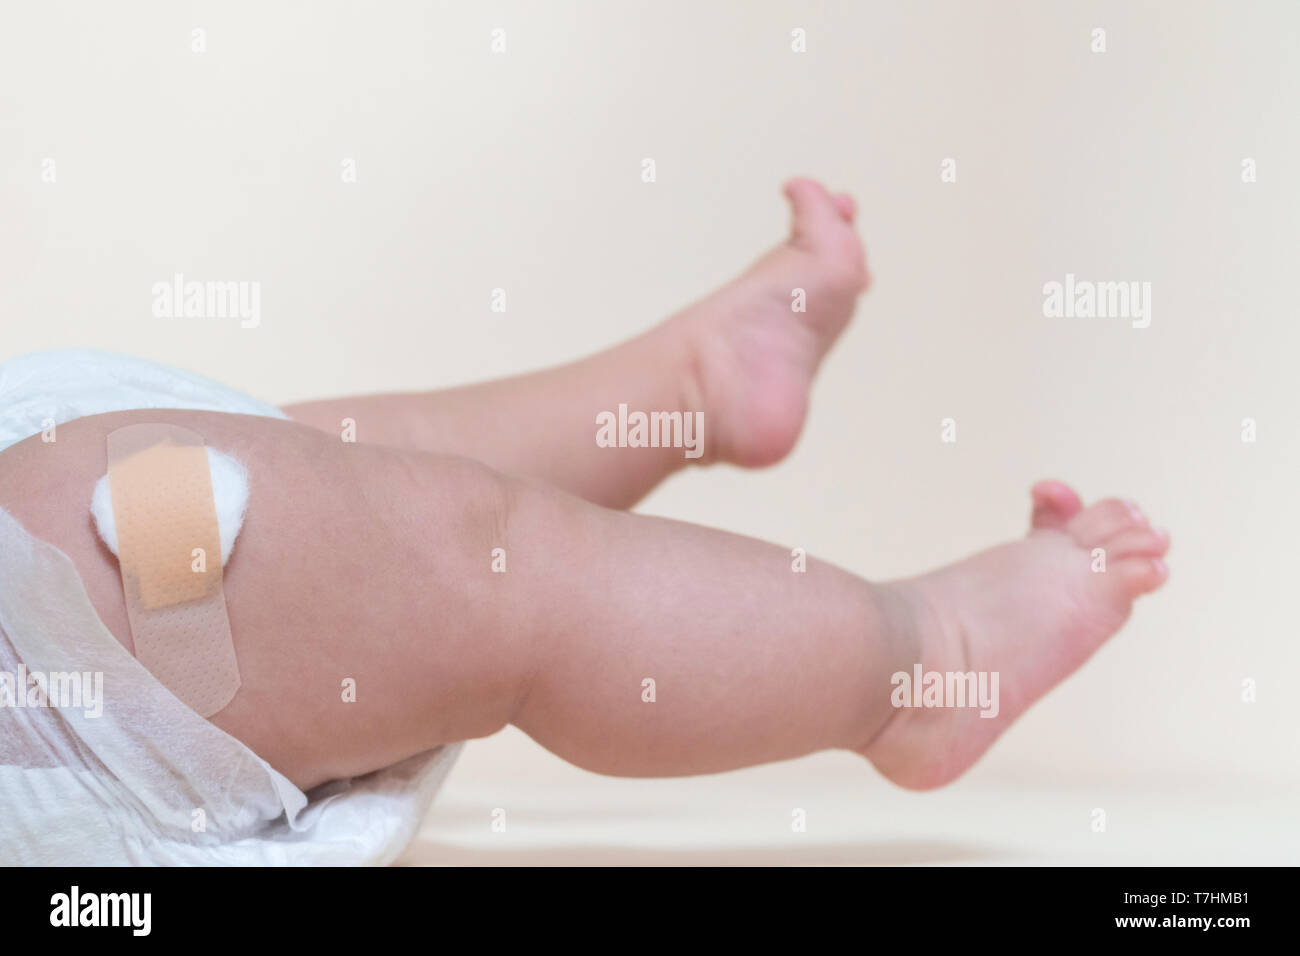 Baby Junge Beine mit einem band-aid Patch nach der Einnahme ein Impfstoff. Arzt oder Krankenschwester, Pflaster auf Baby Bein im Krankenhaus. Stockfoto